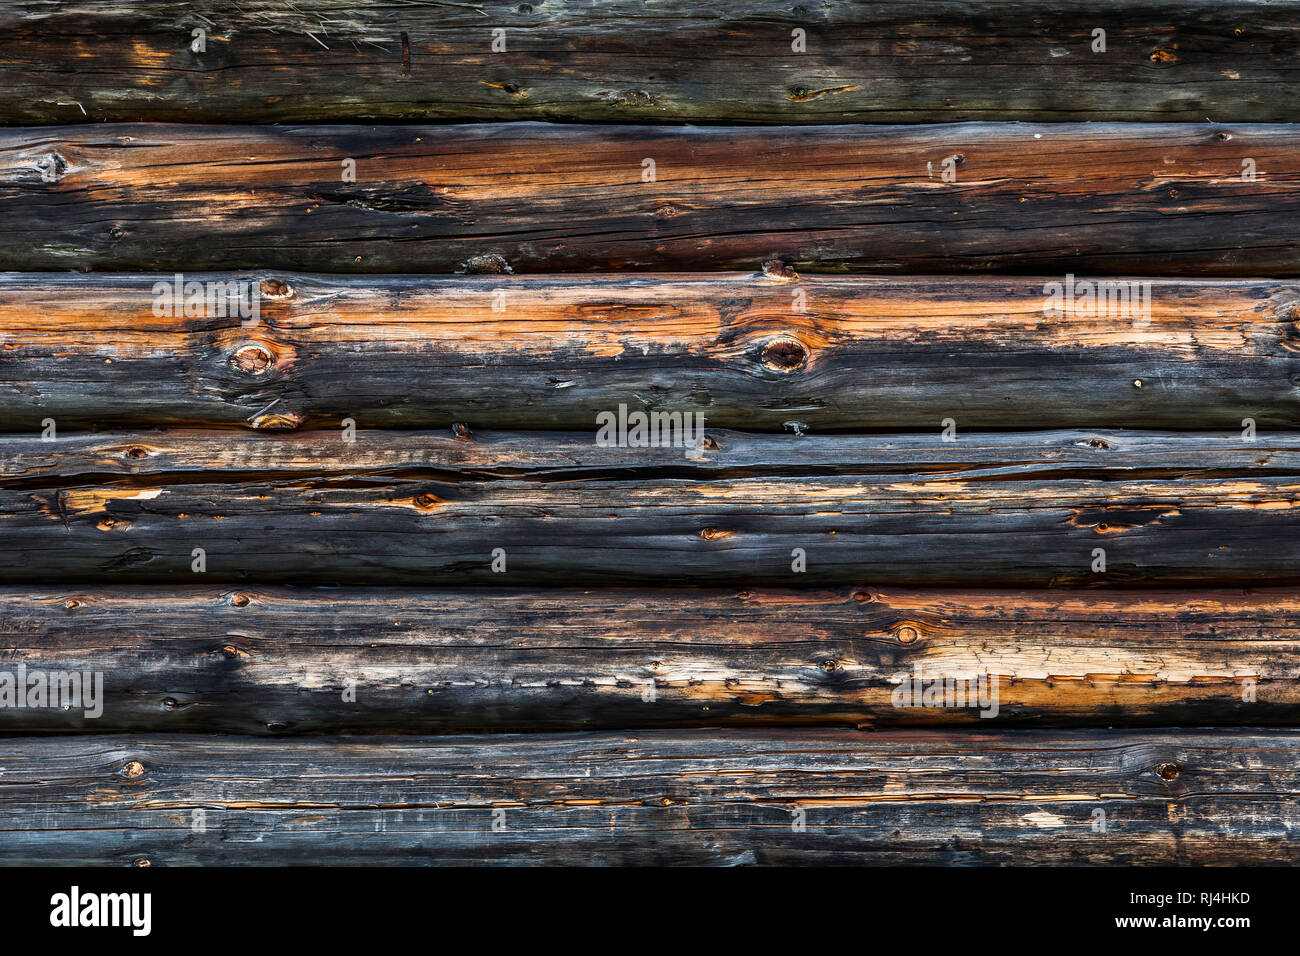 Holzwand aus alten unbehandelten vergrauten Balken, S?dtirol, Italien, Europa, Foto Stock